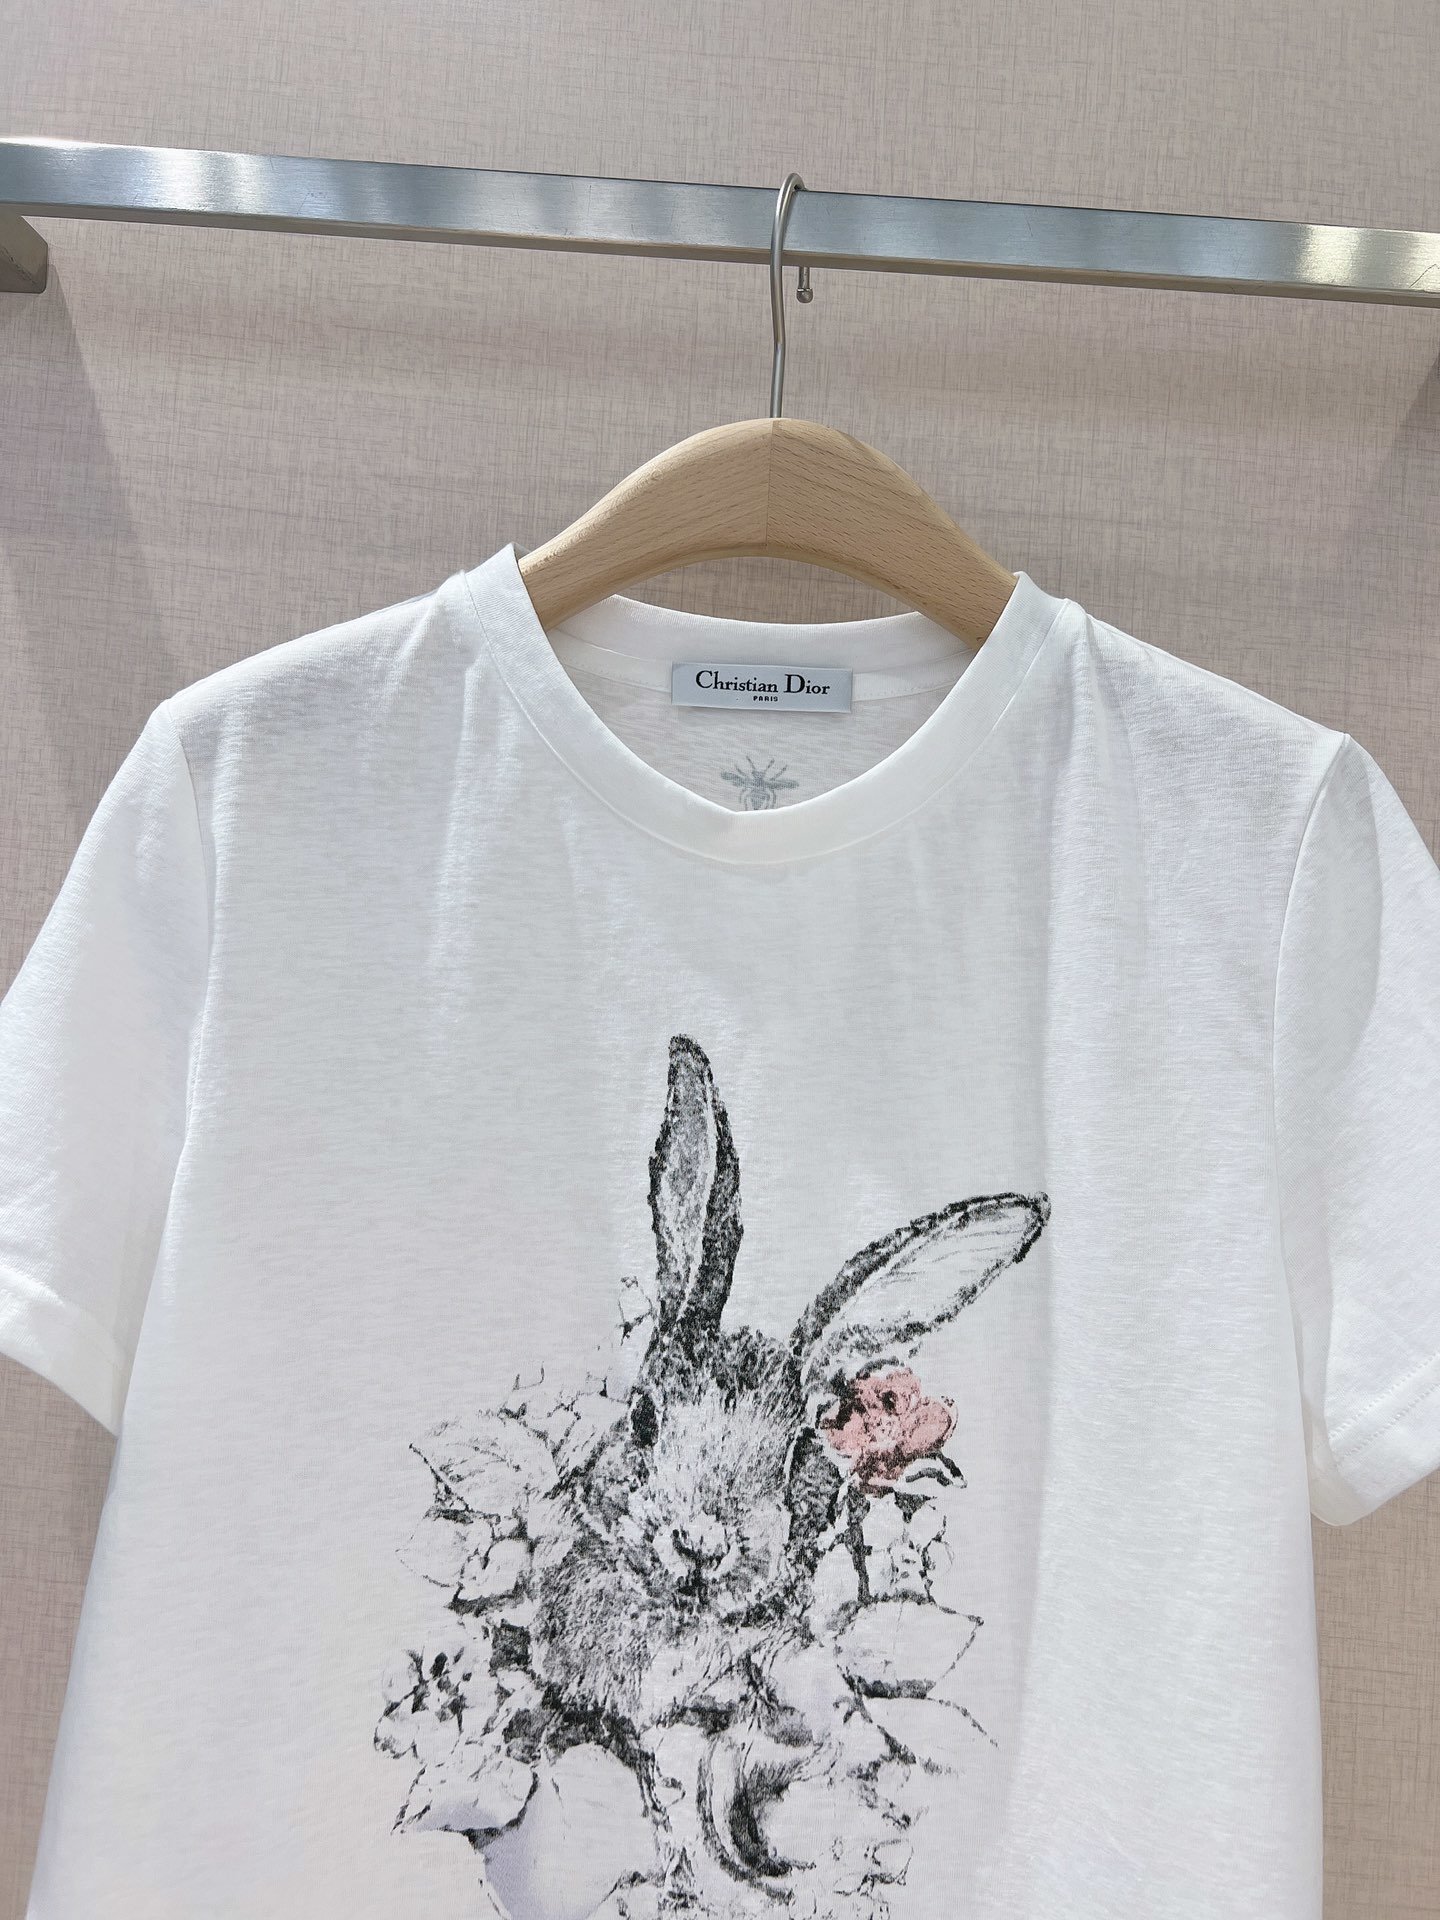 Dio*r早春新款可爱兔D家早春兔年款真的太好看了可爱兔的图案素描设计时尚简约圆领T恤百搭好穿萌兔印花超